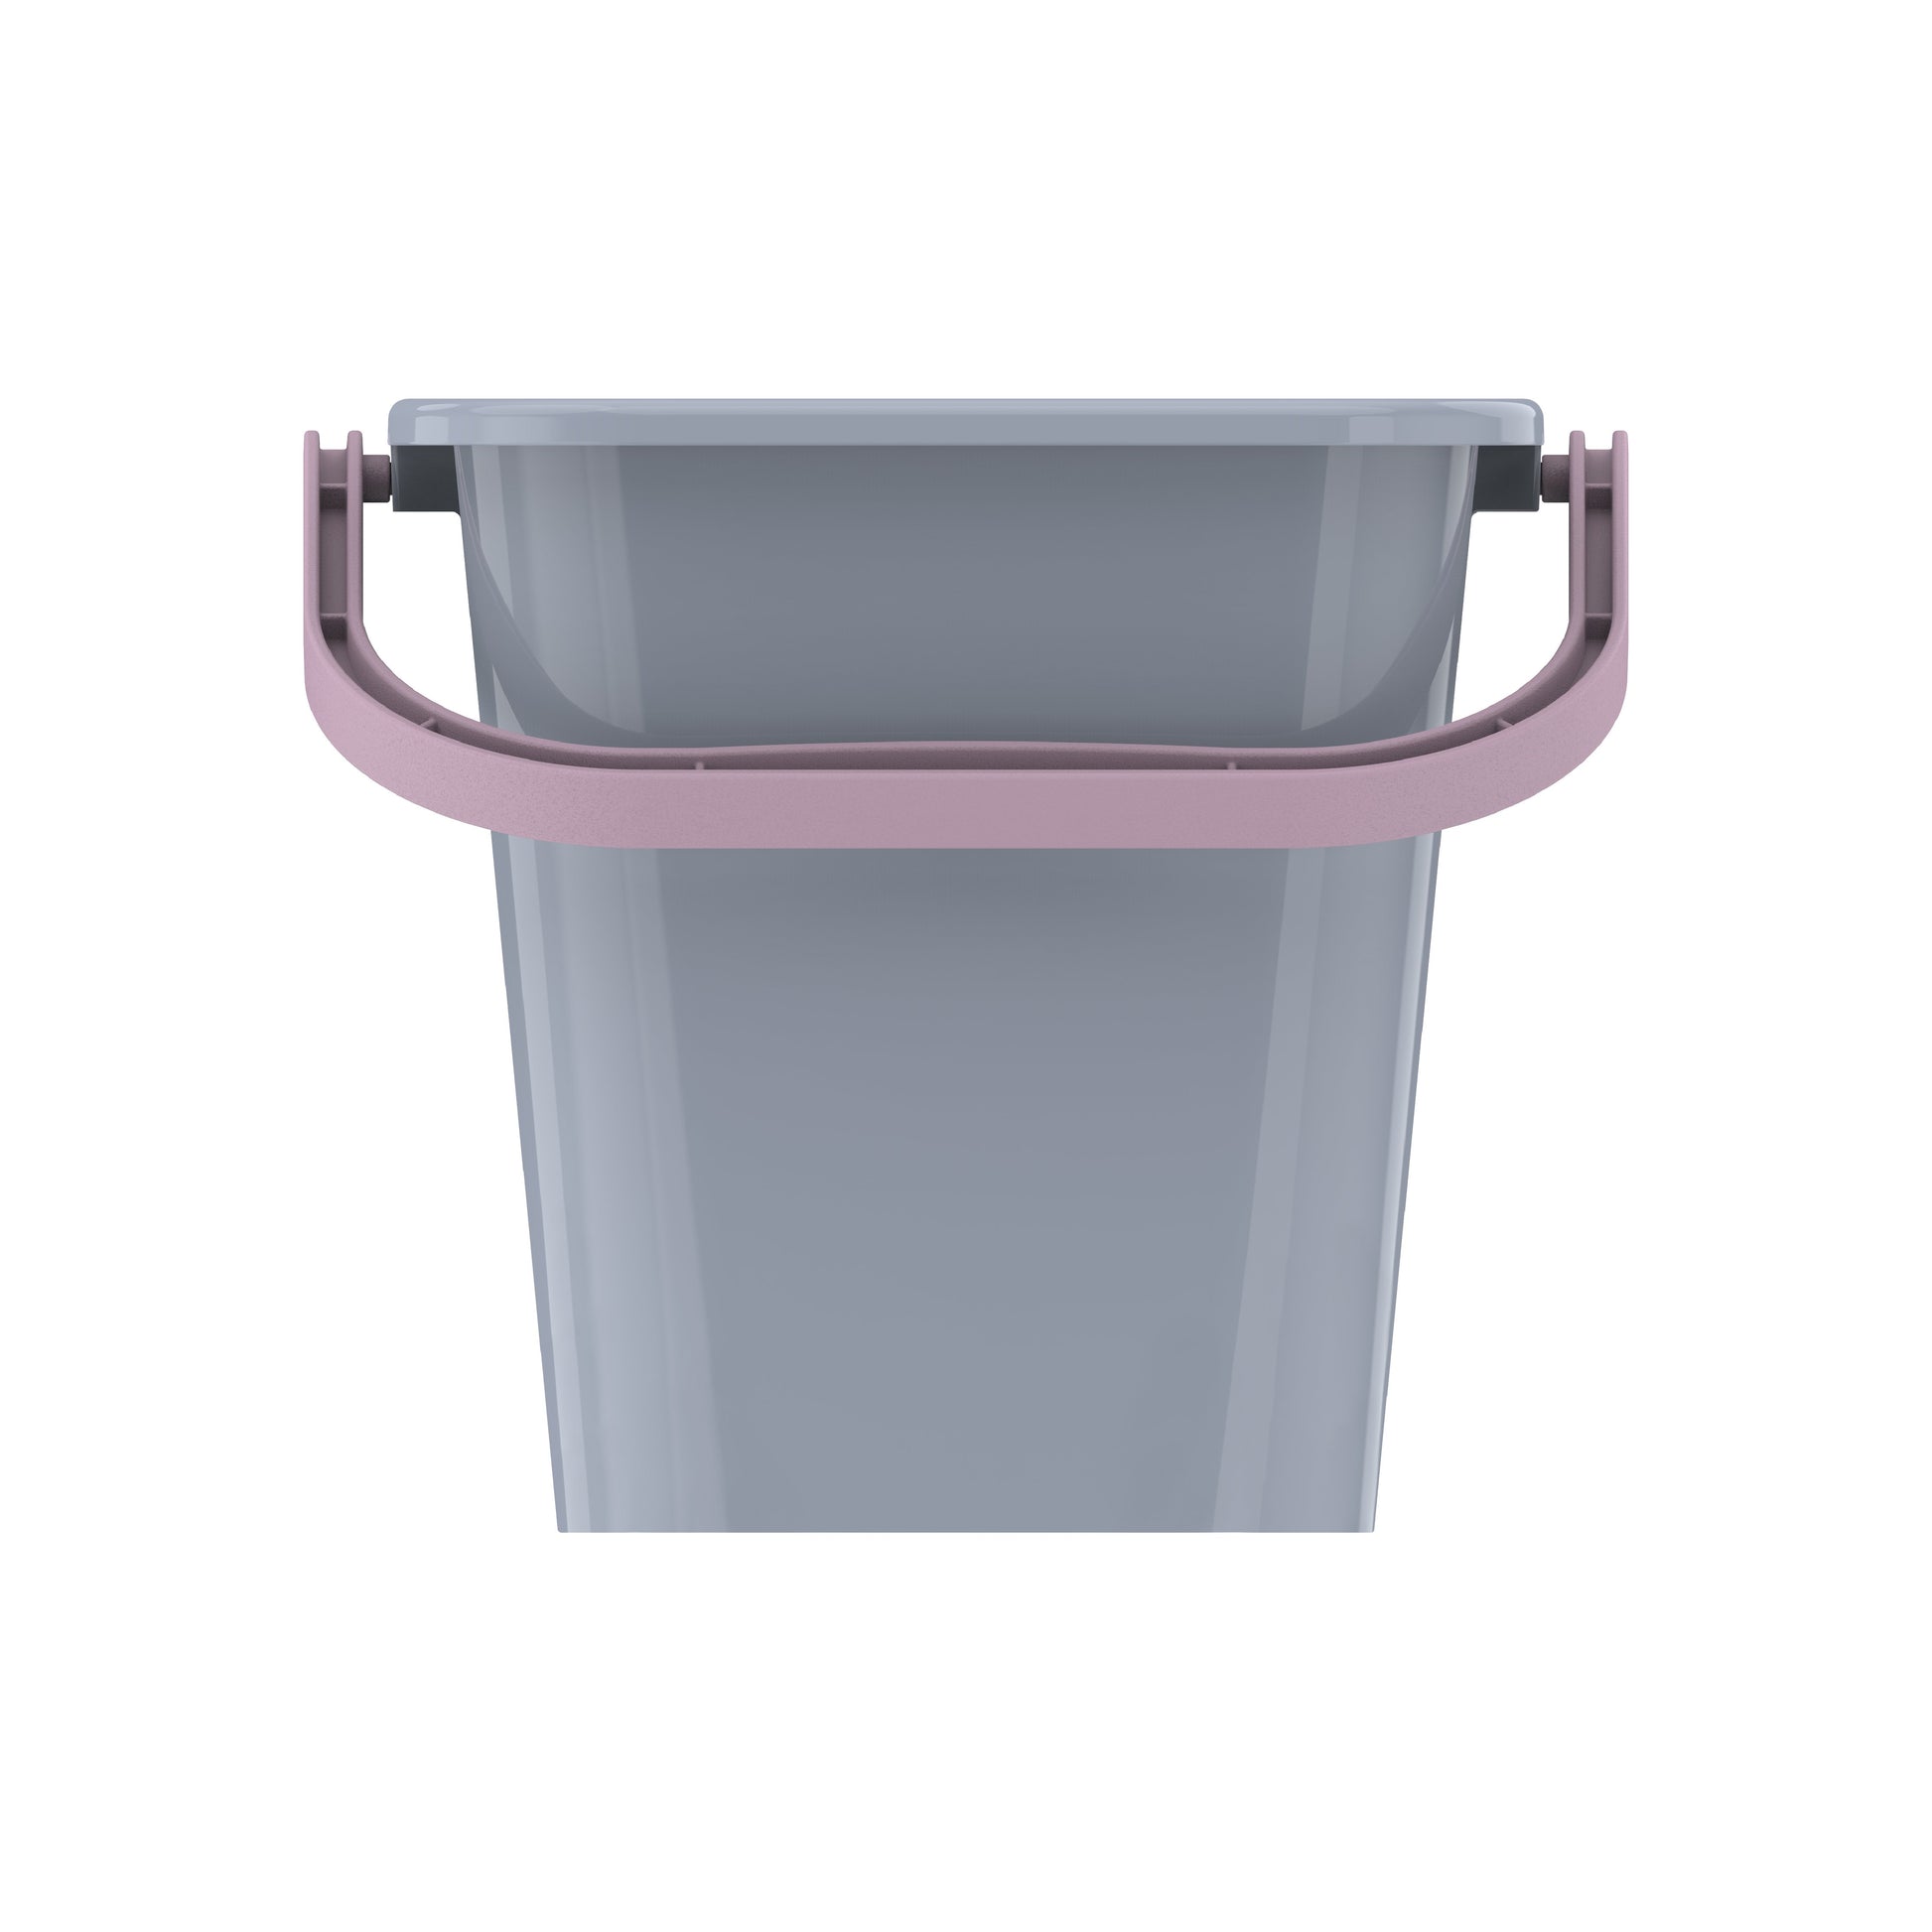 Cosmoplast Disney Frozen Sand Bucket 3 Liters with Handle